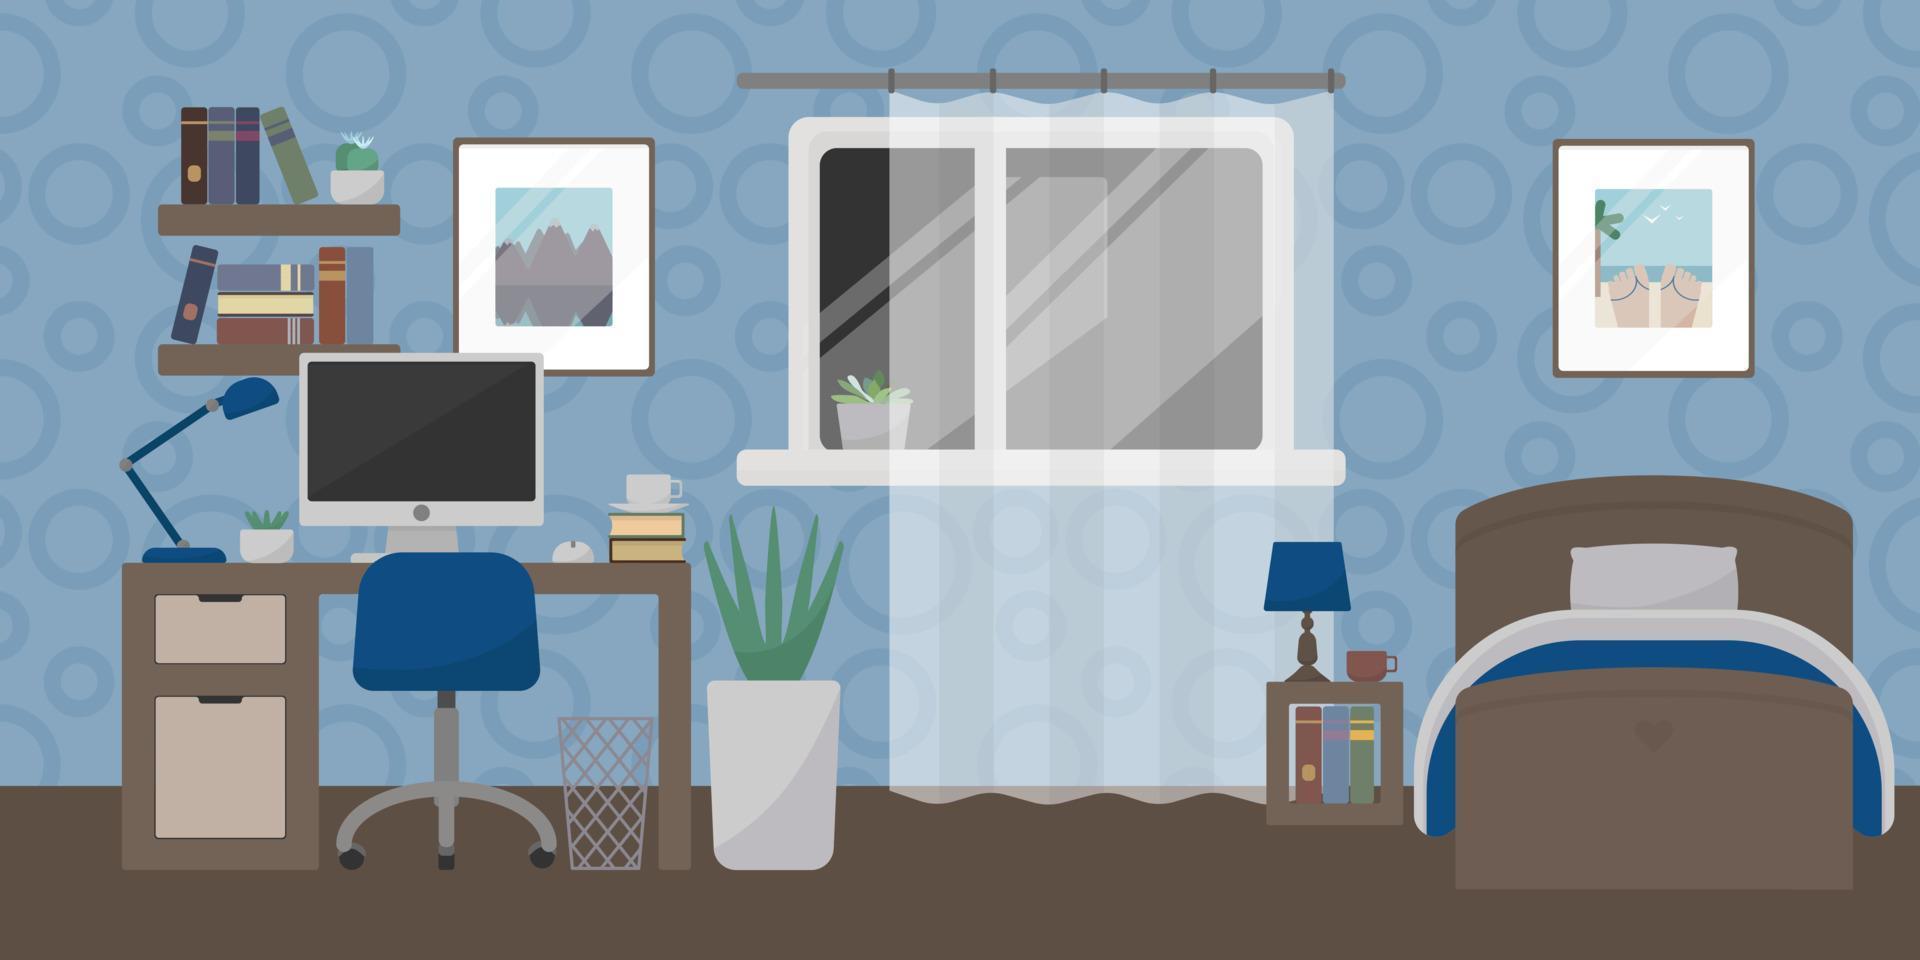 schulkinder- oder jugendlicherschlafzimmer mit möbeln. Computertisch, Bett und Zimmerpflanze. Vektor-Illustration. vektor